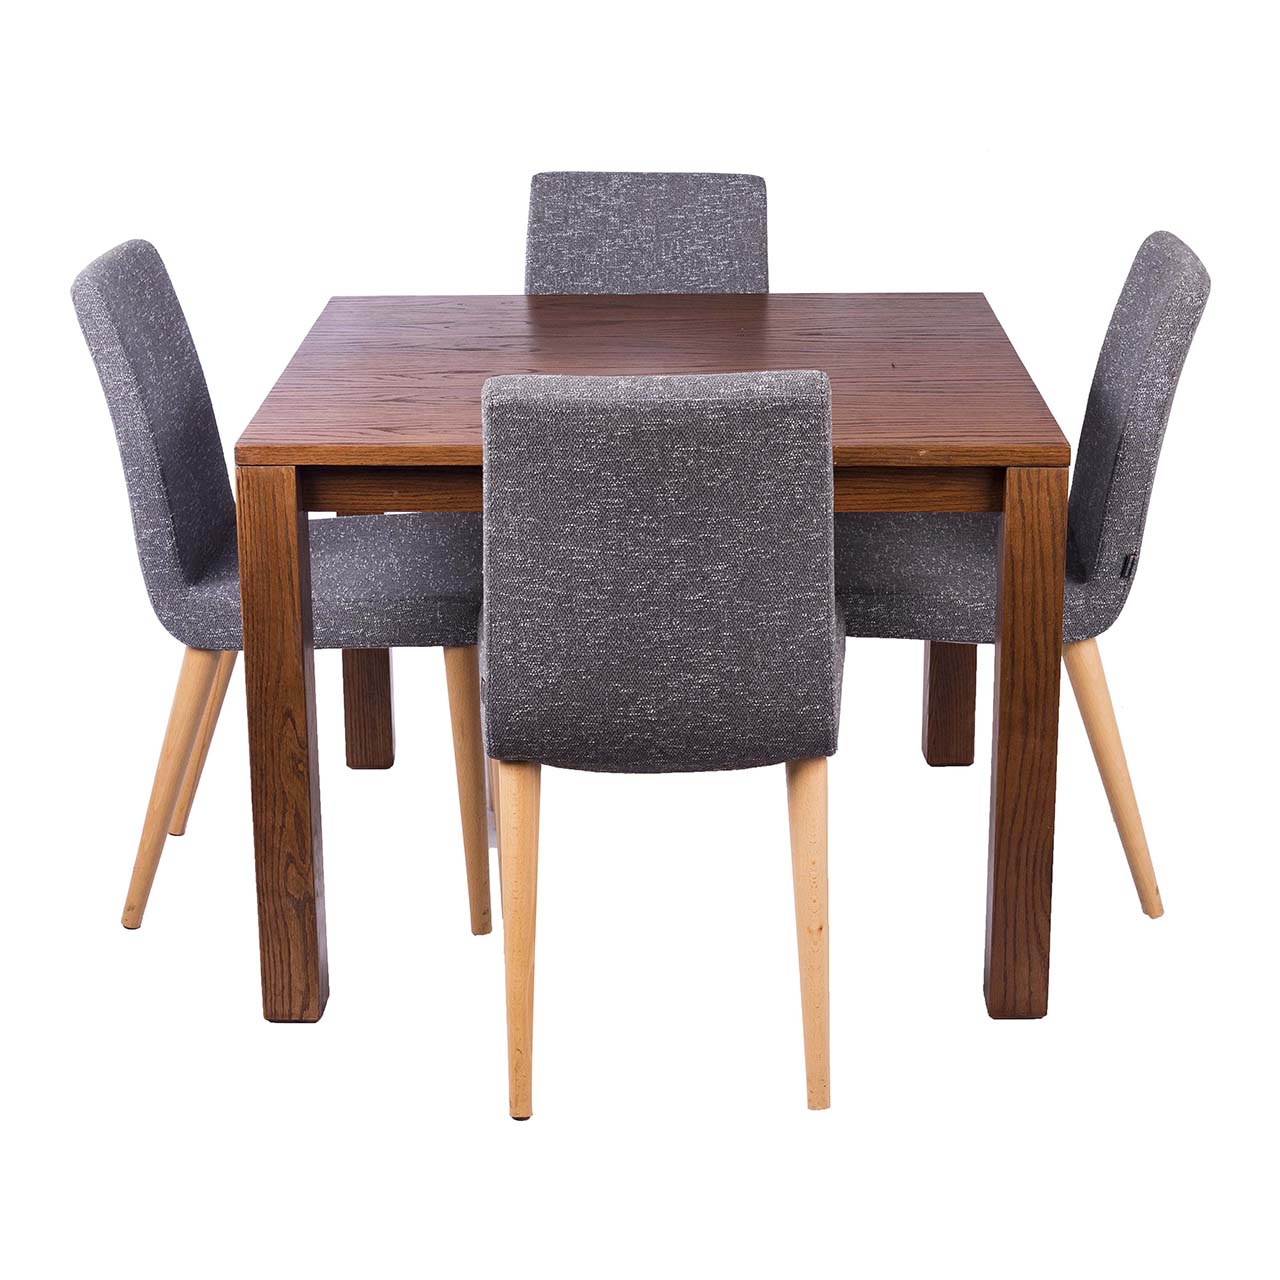 ست میز ناهار خوری و صندلی ایتال فوم مدل 001 چهار نفره 